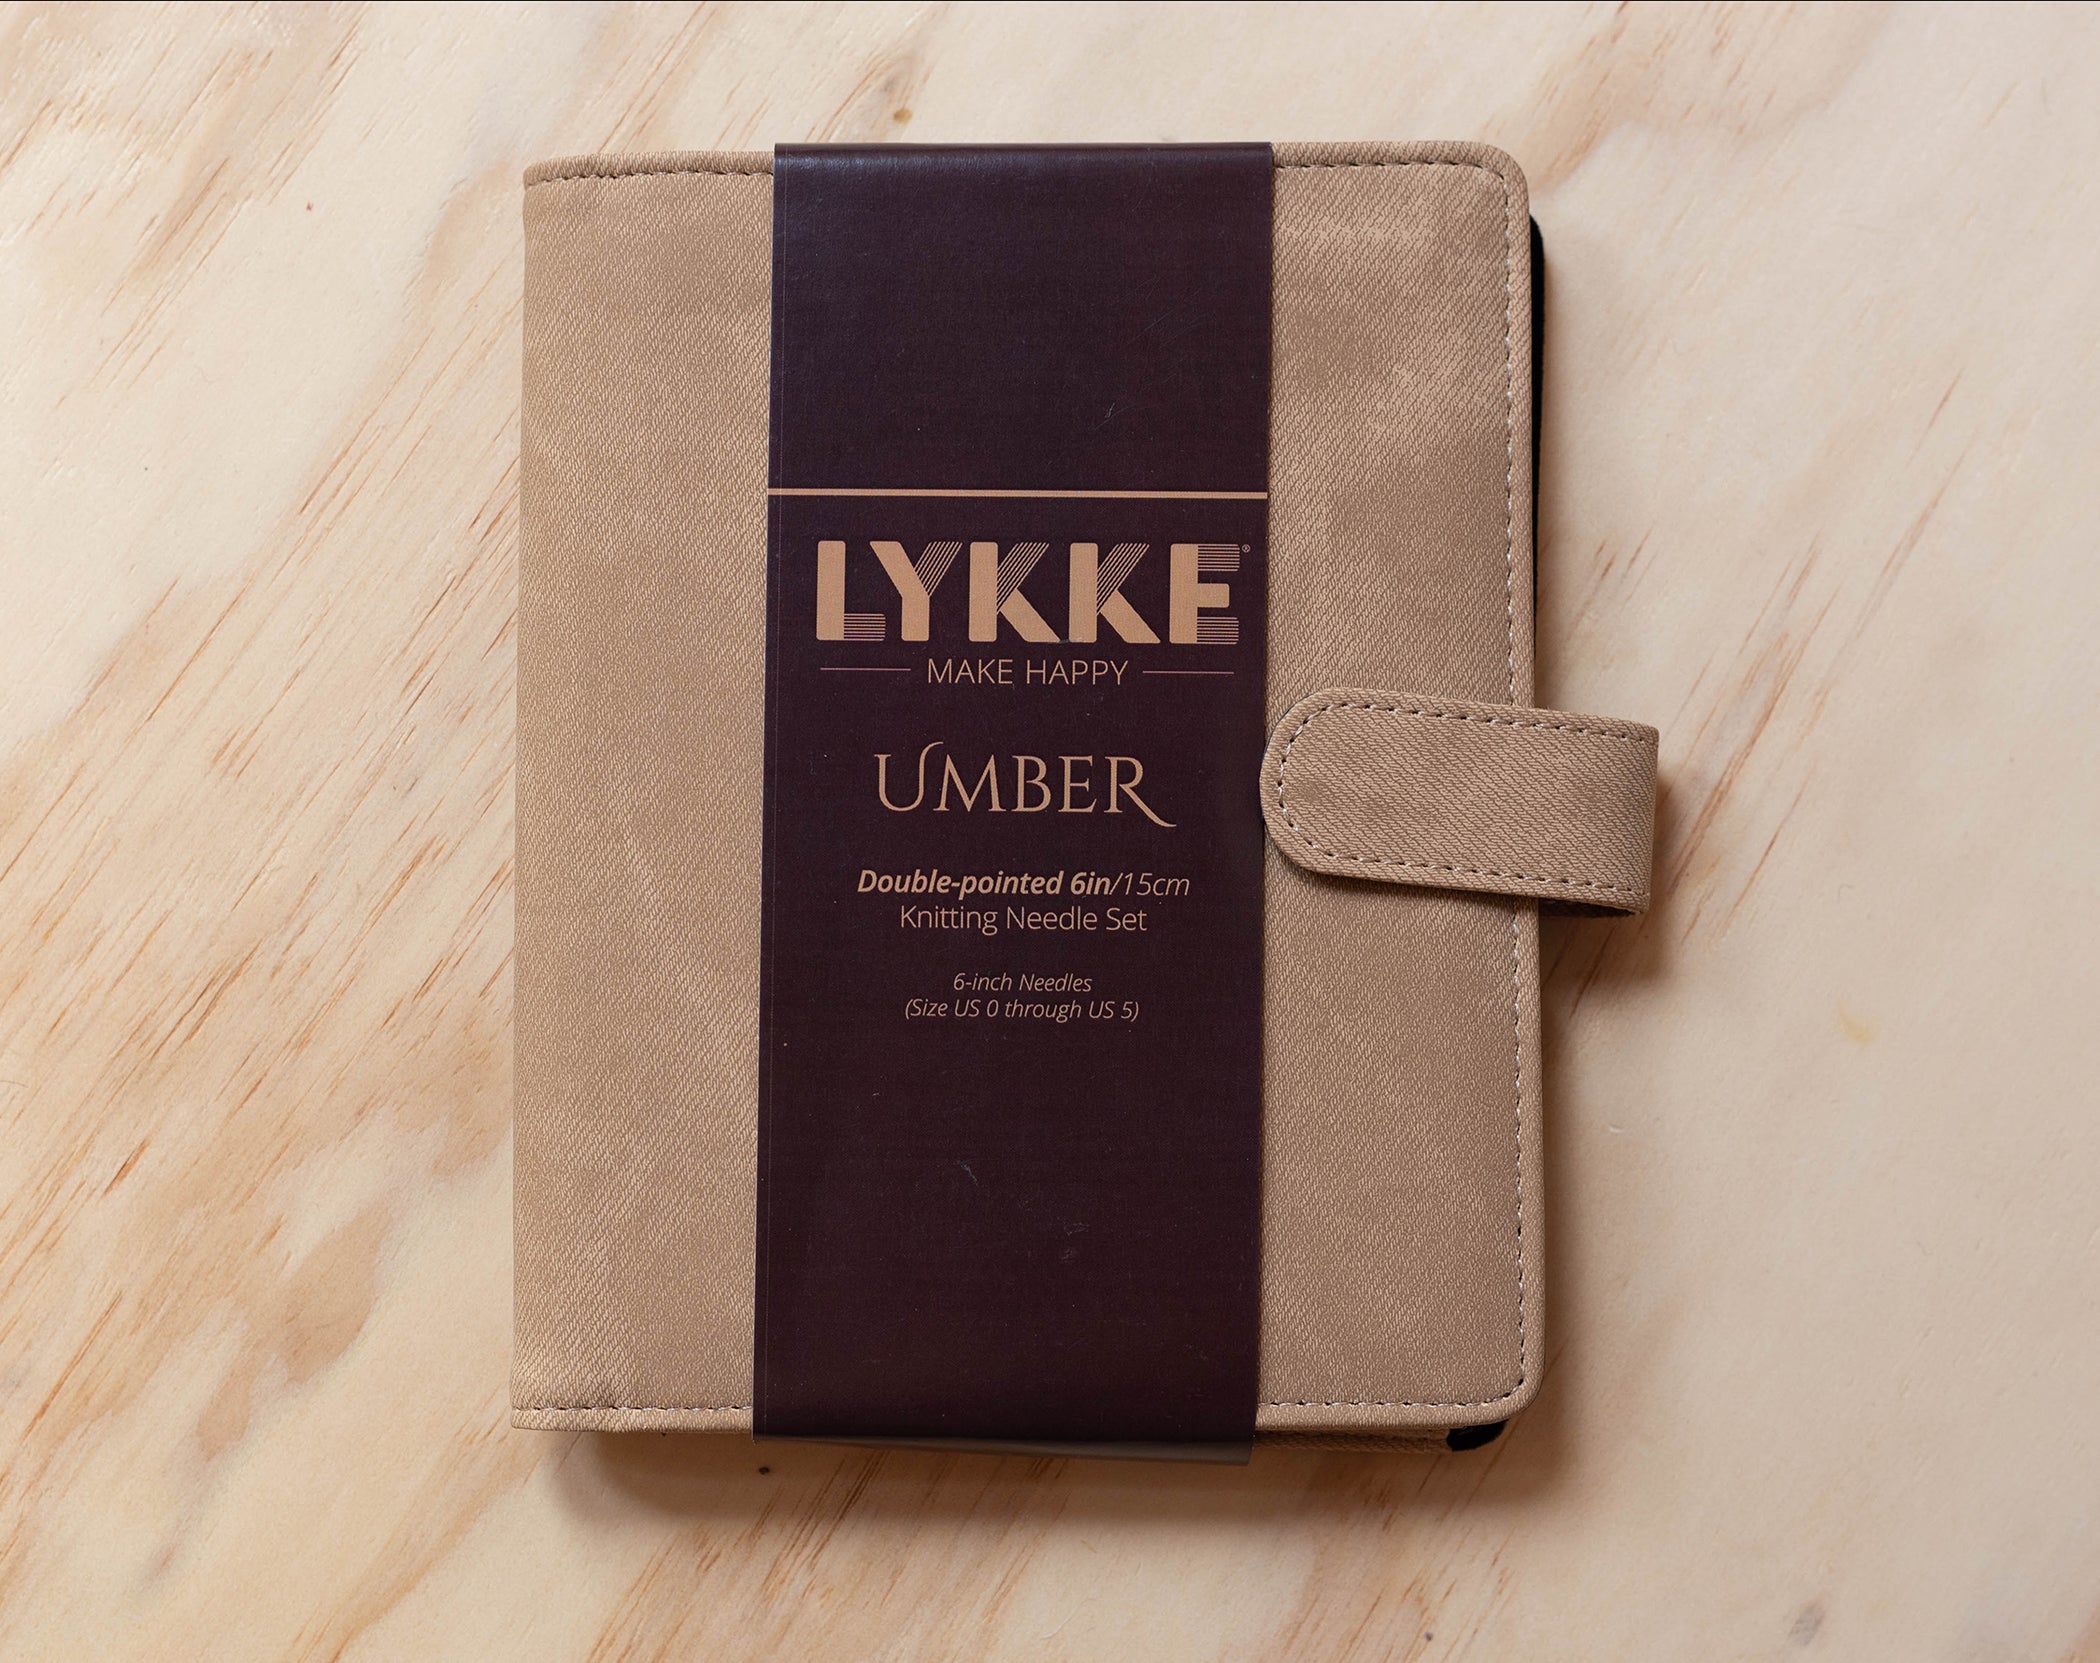 LYKKE umber Double Pointed Knitting Needles Set 6/ 15cm Sizes US 6